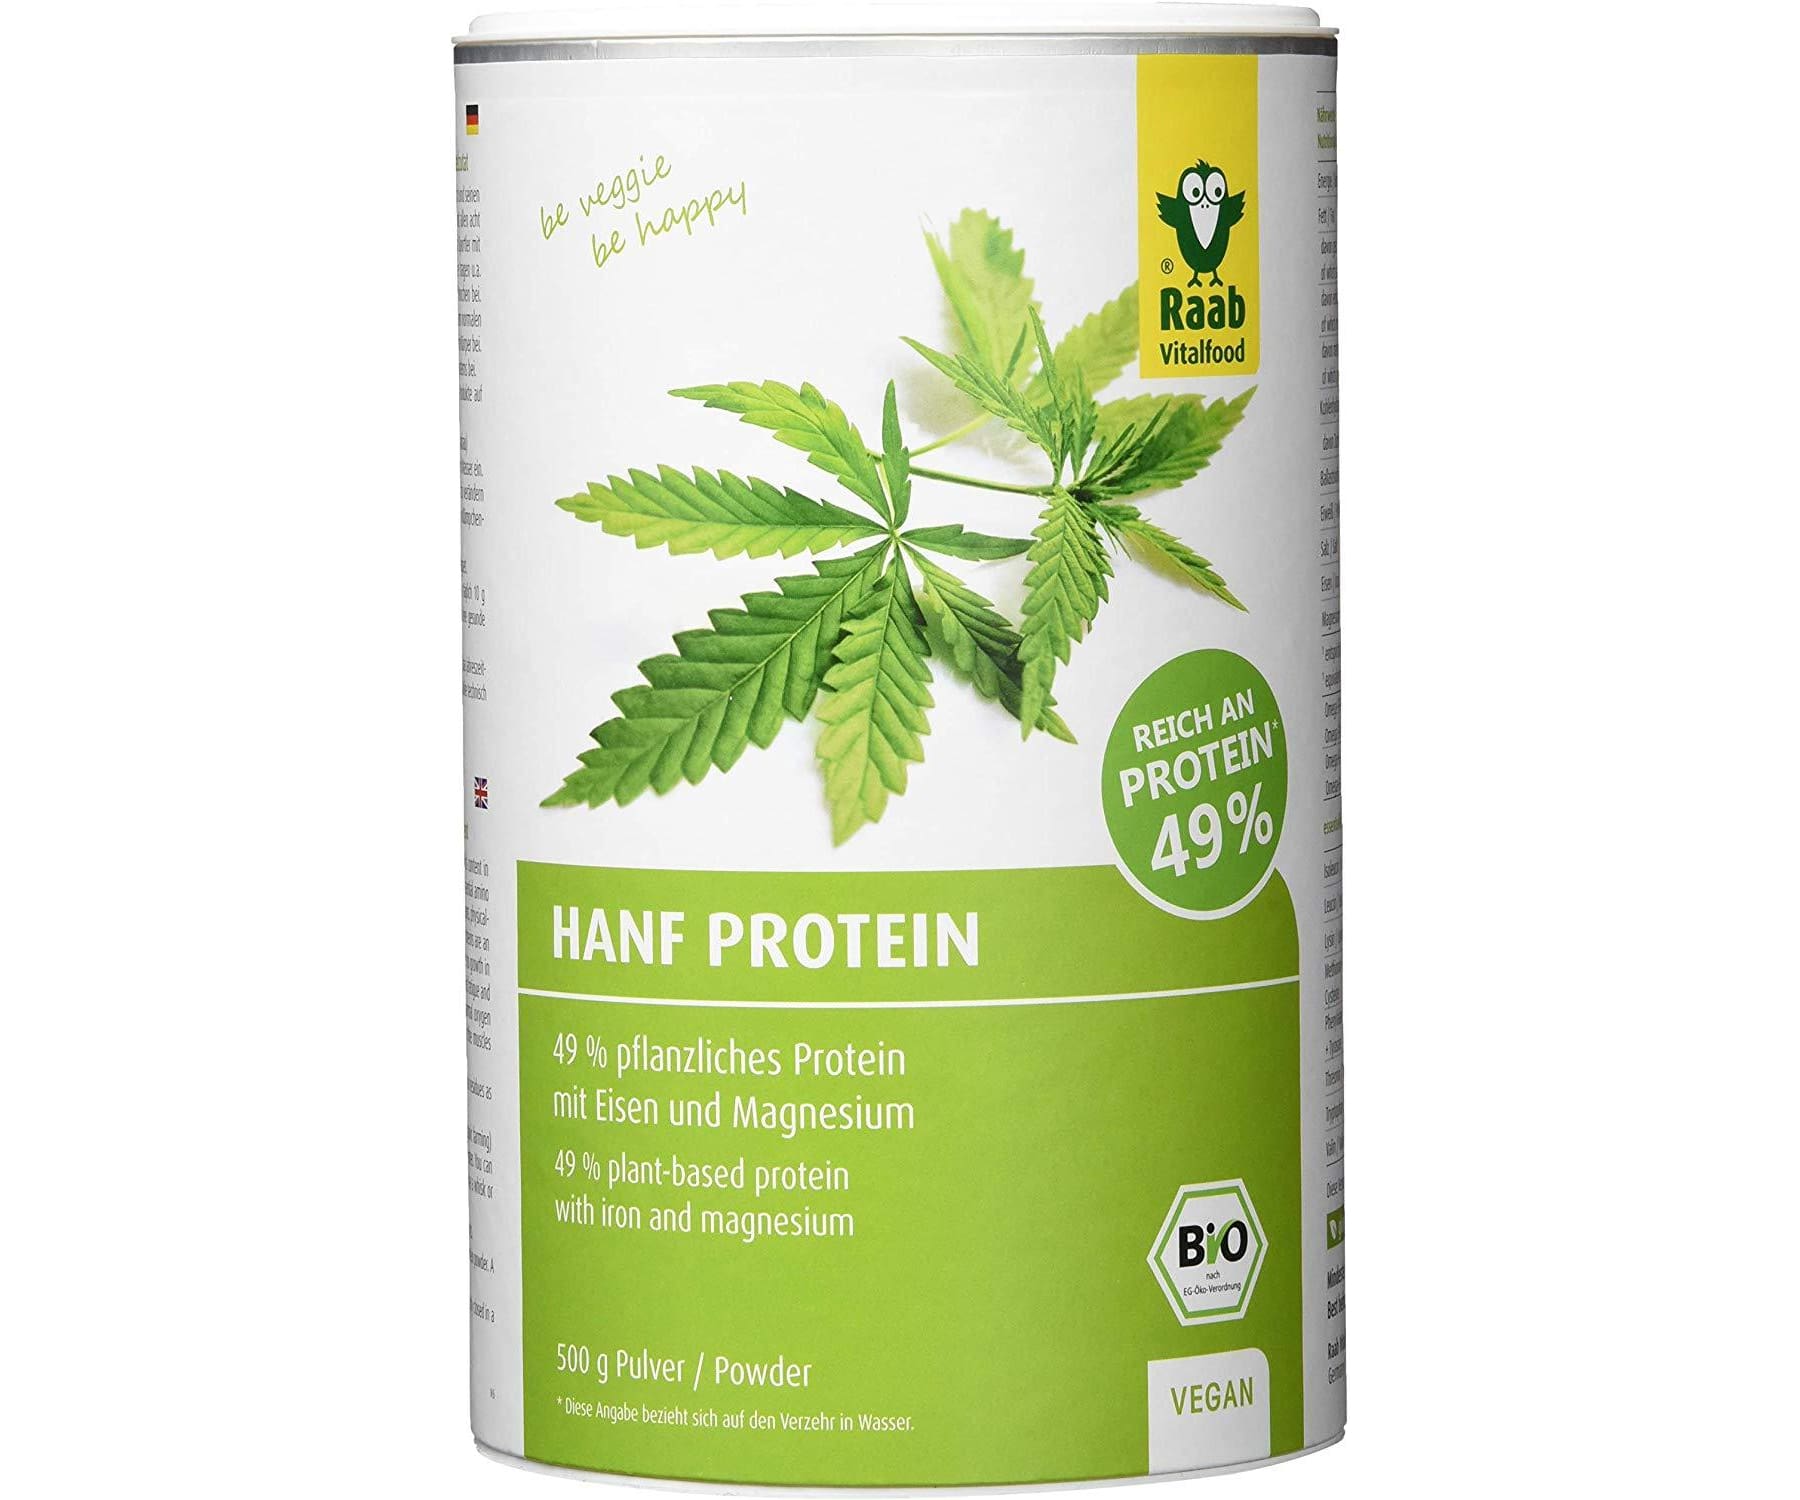 Hanf und Hemp - Raab Vitalfood Bio Hanf Protein 500g - Pflanzlich